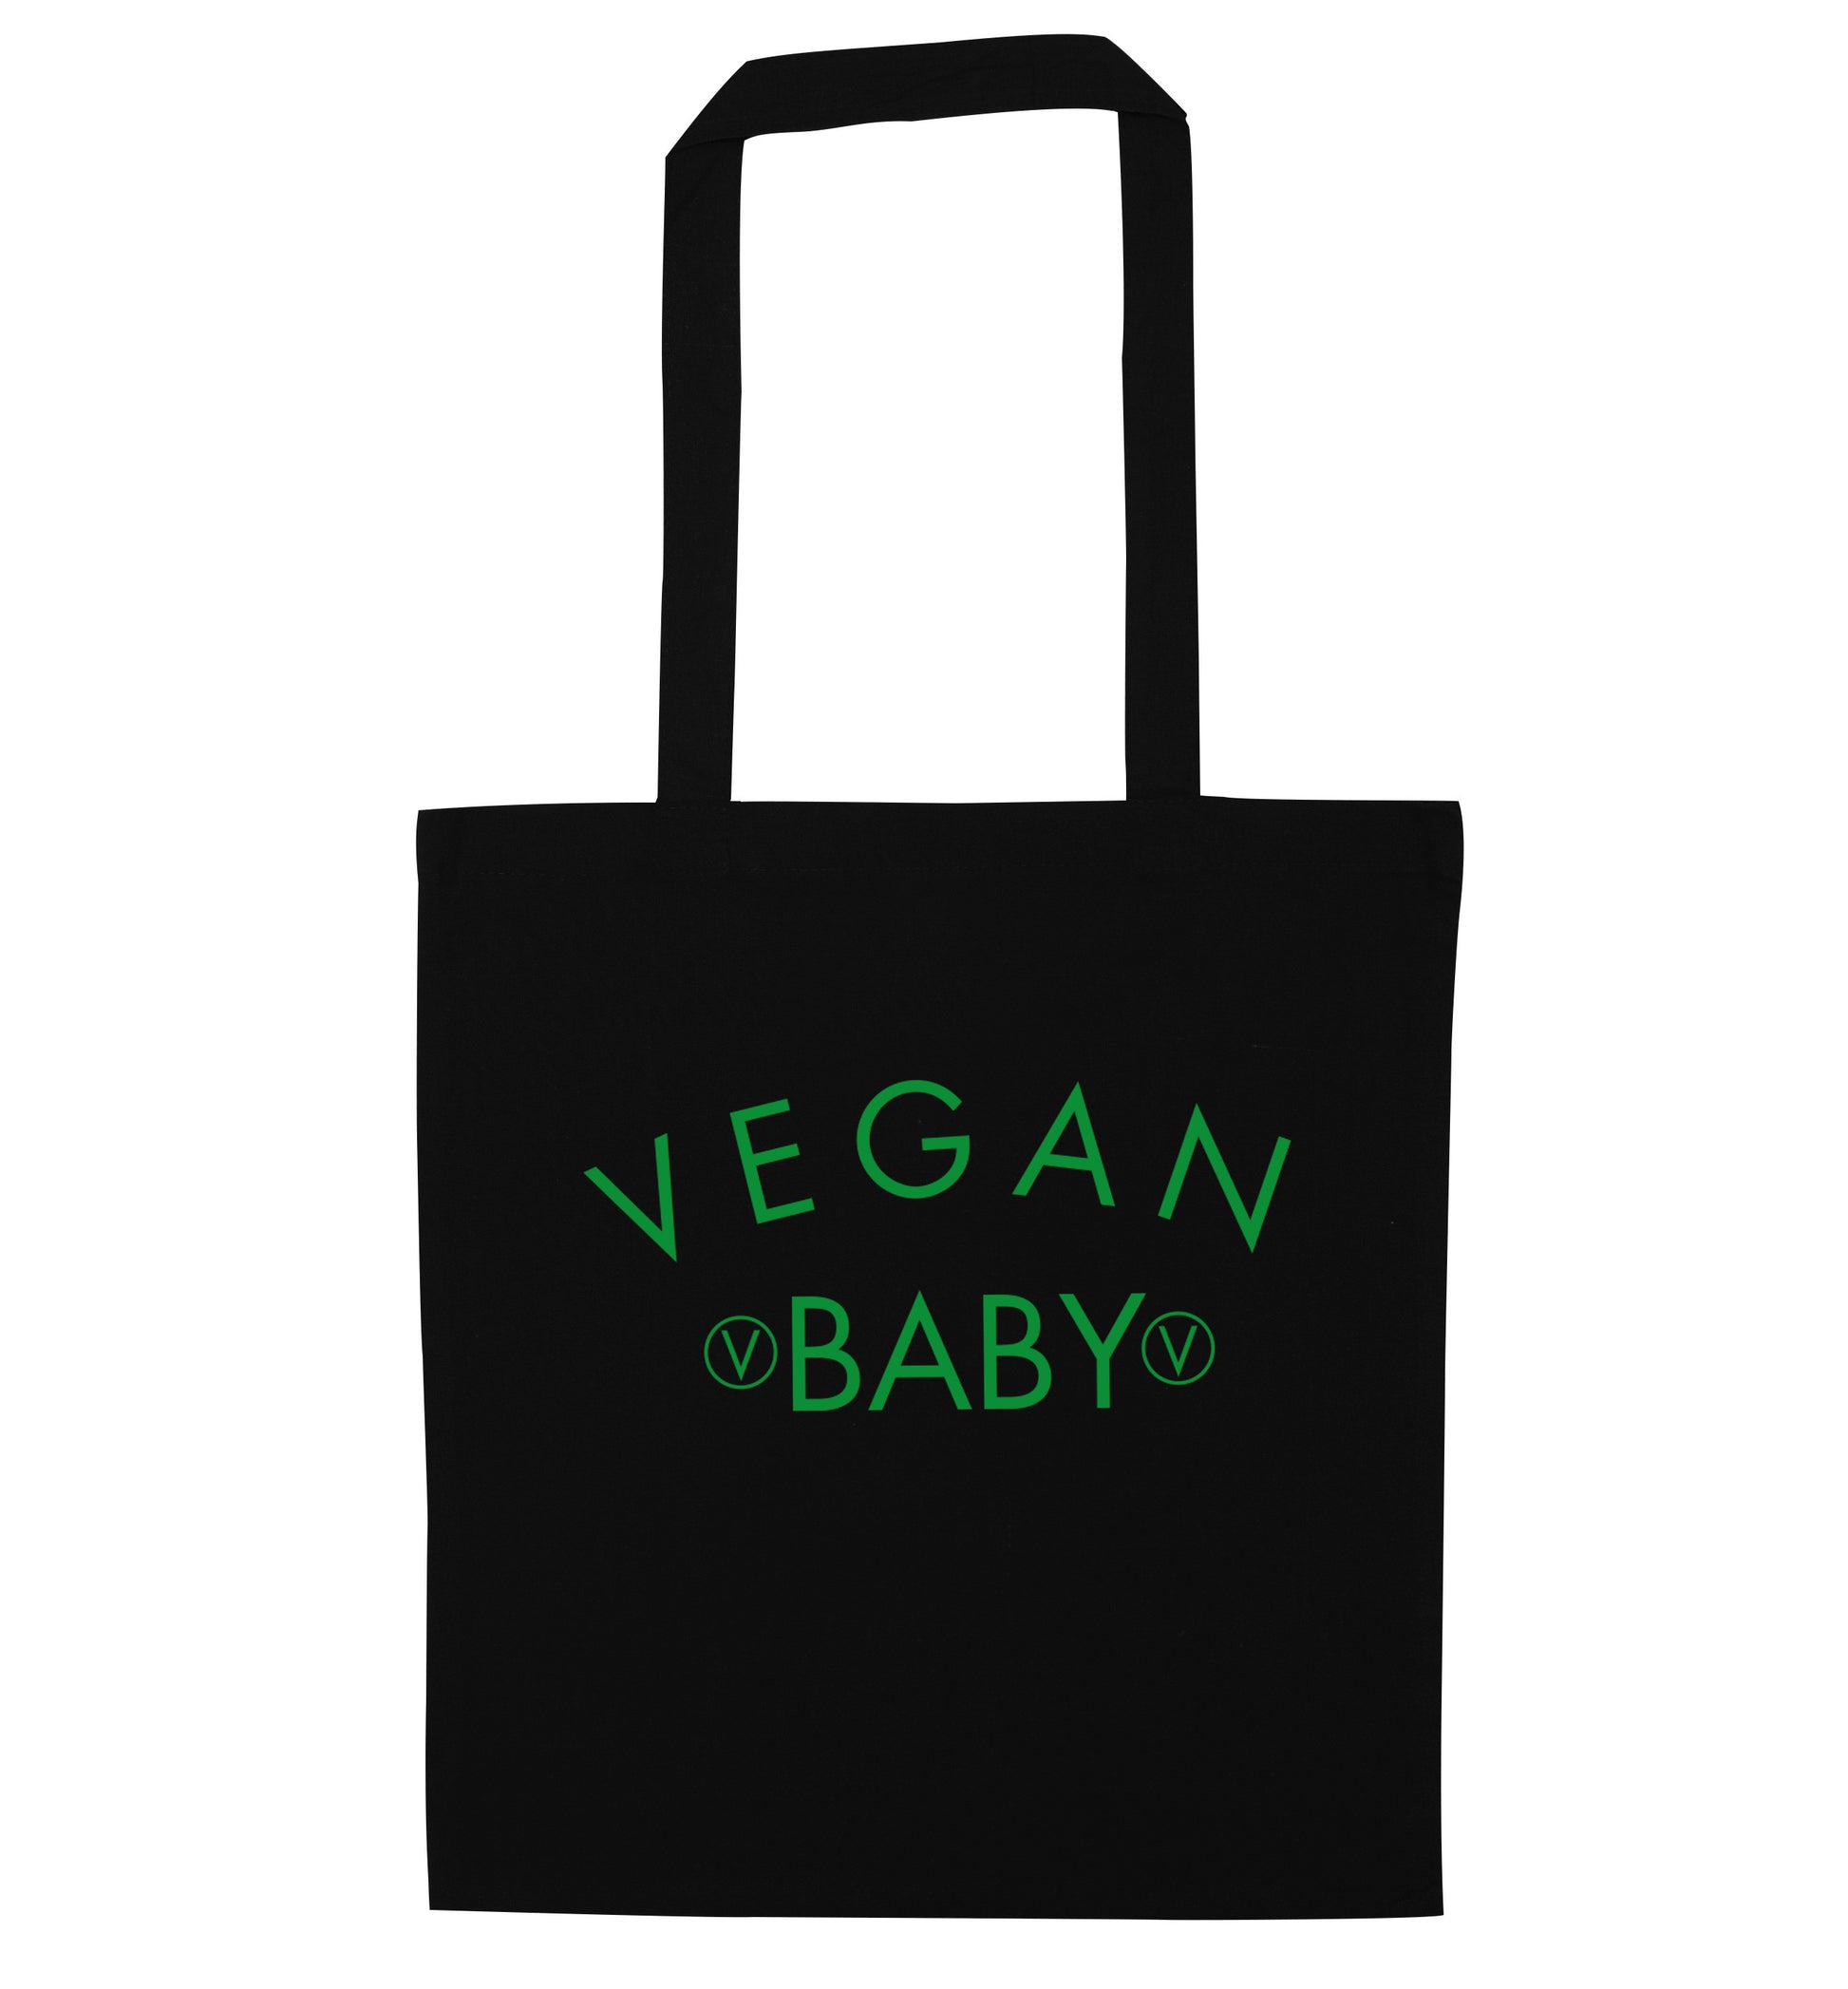 Vegan baby black tote bag